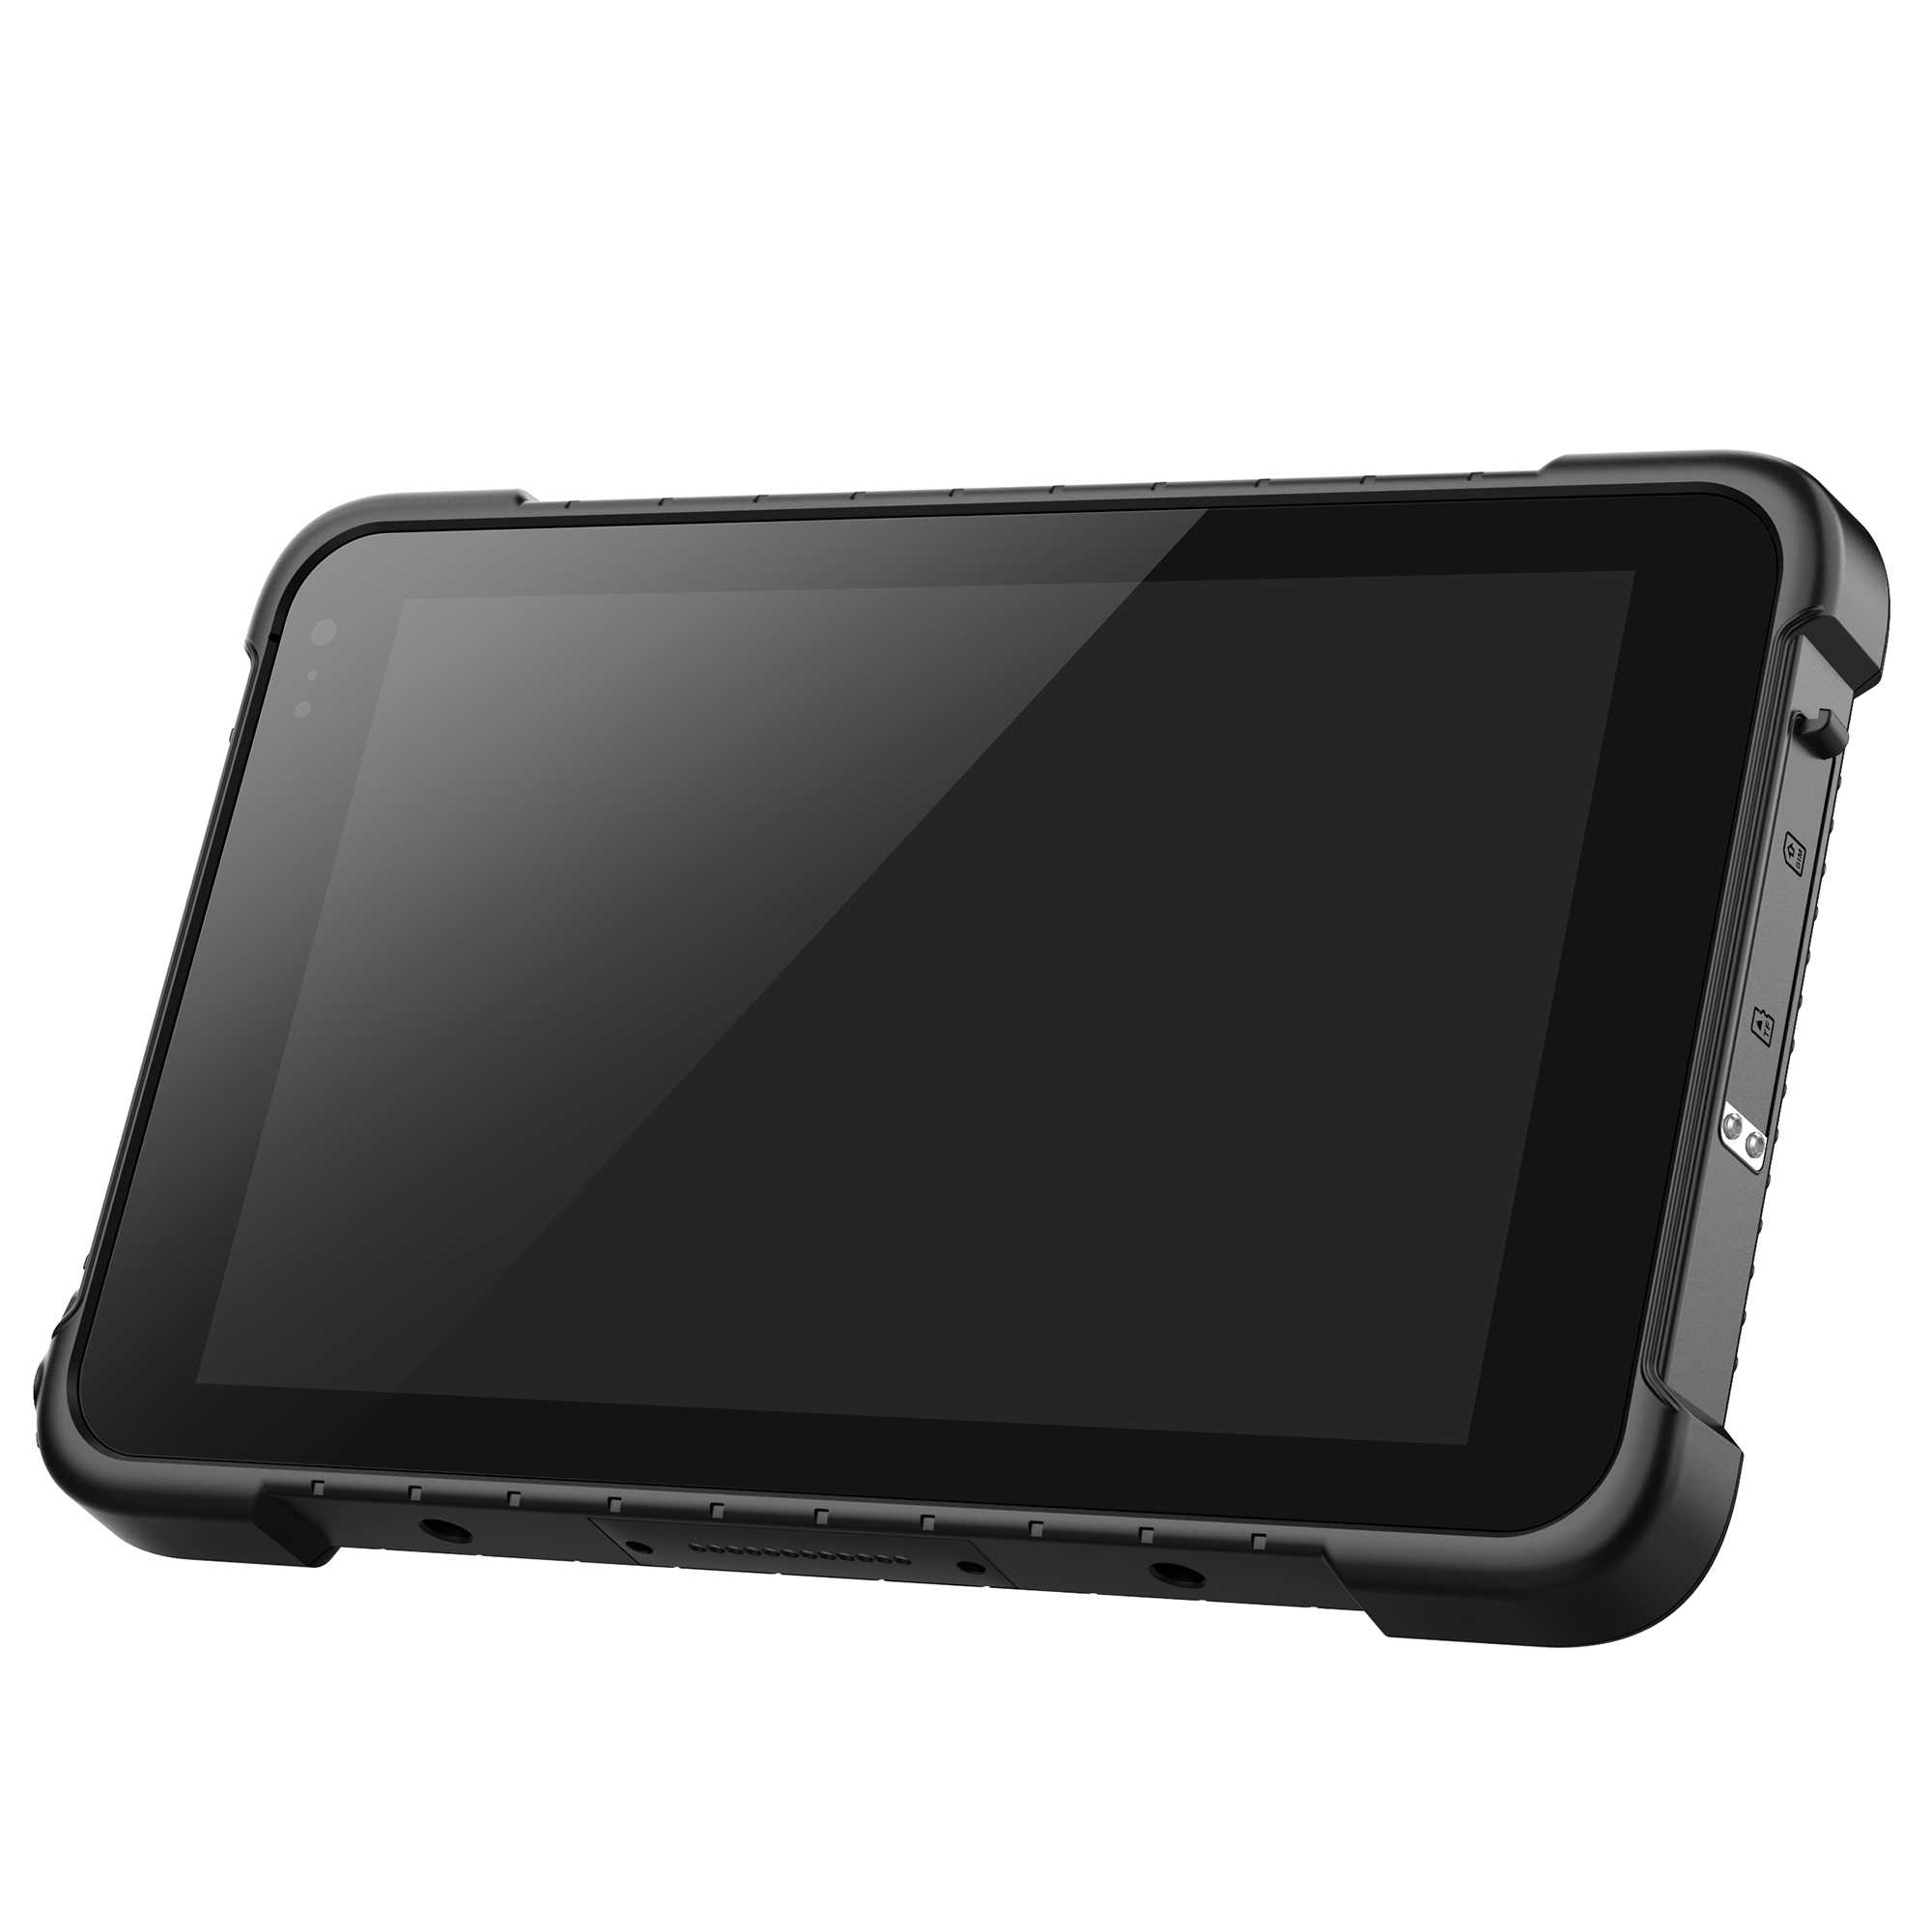 U-i86H Industrial Tablet